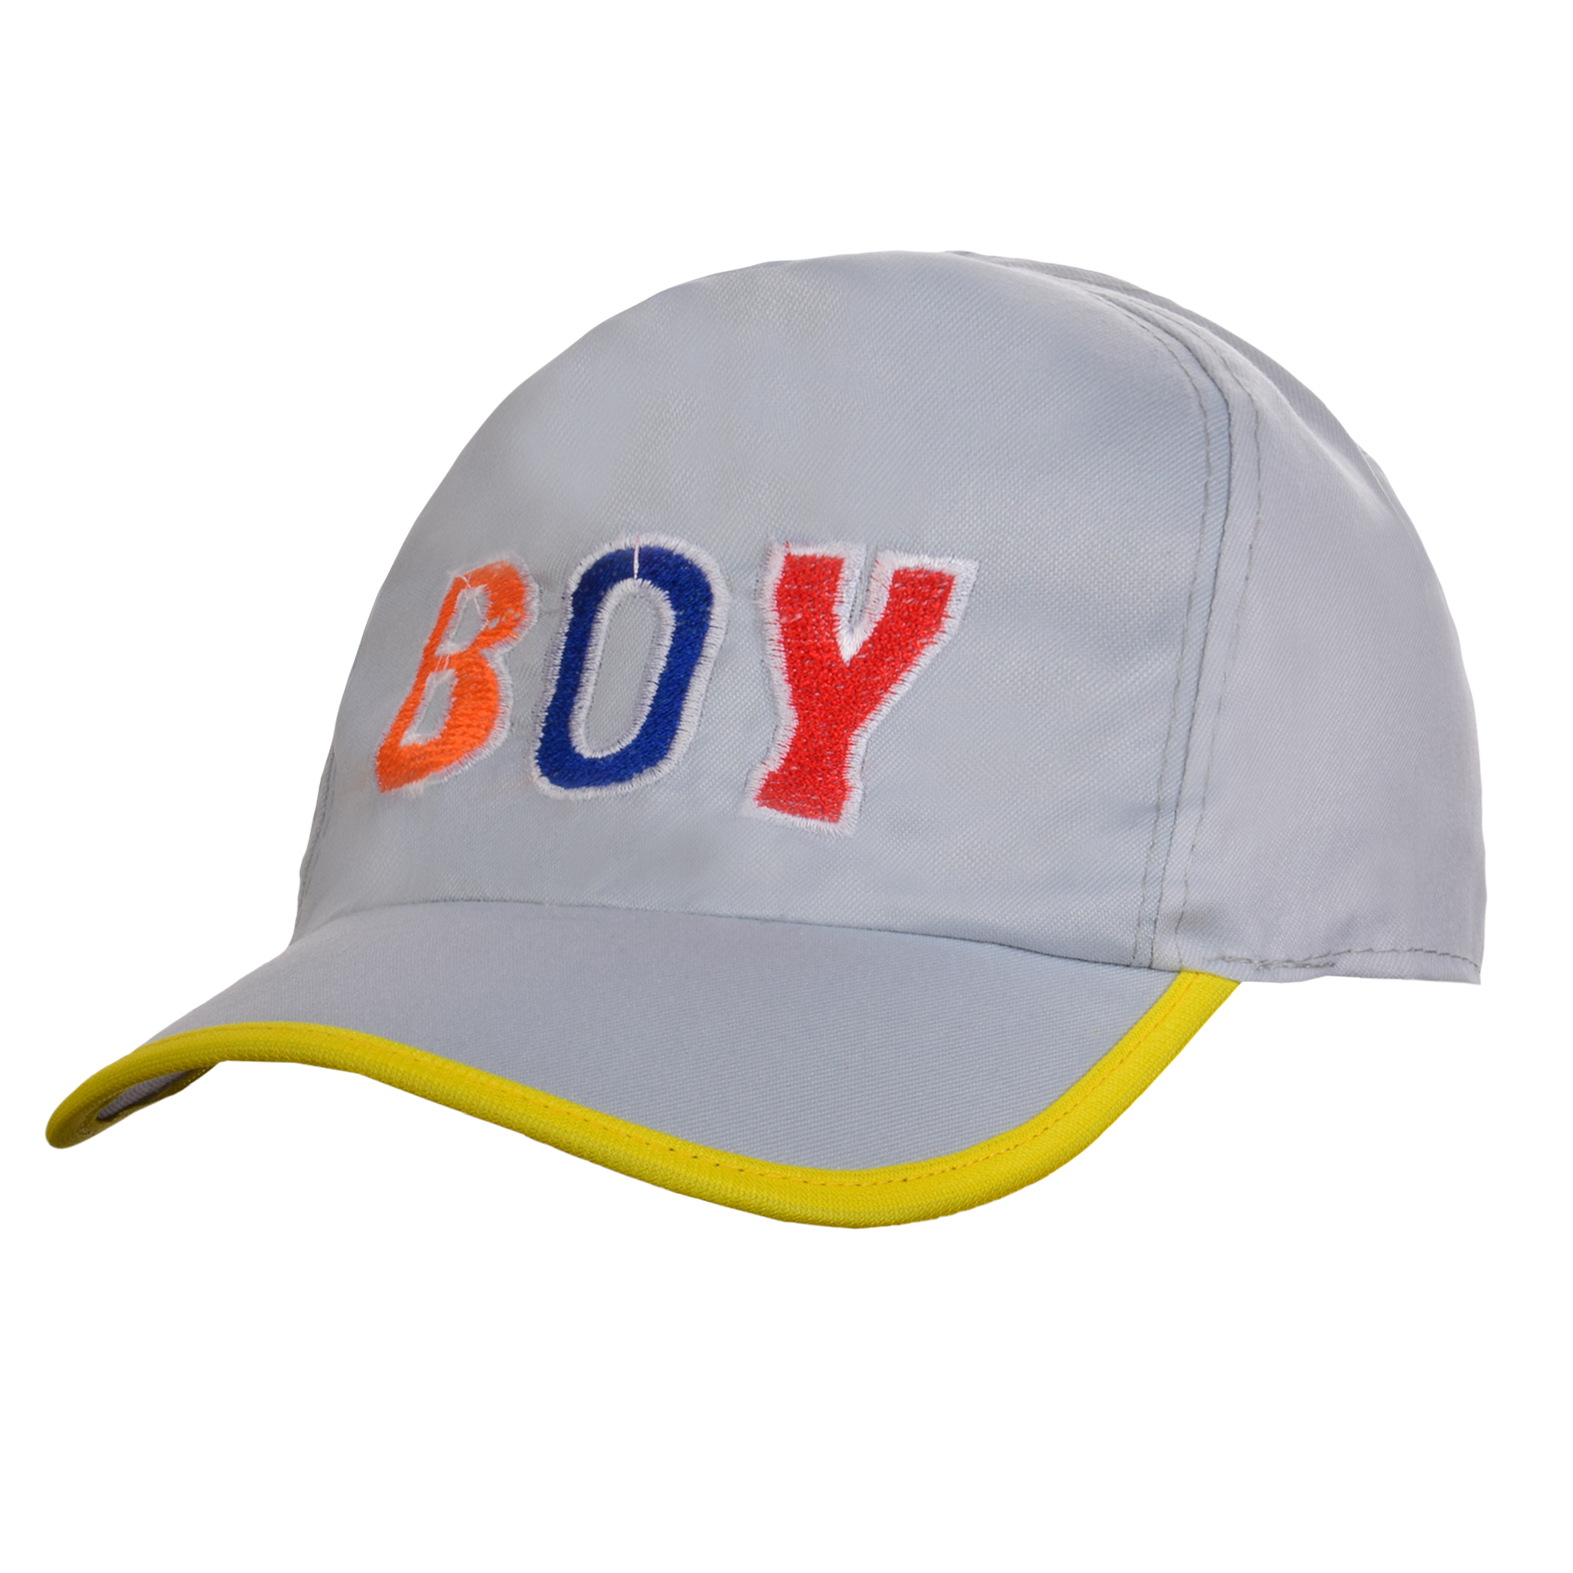 کلاه کپ پسرانه کد P1641-52